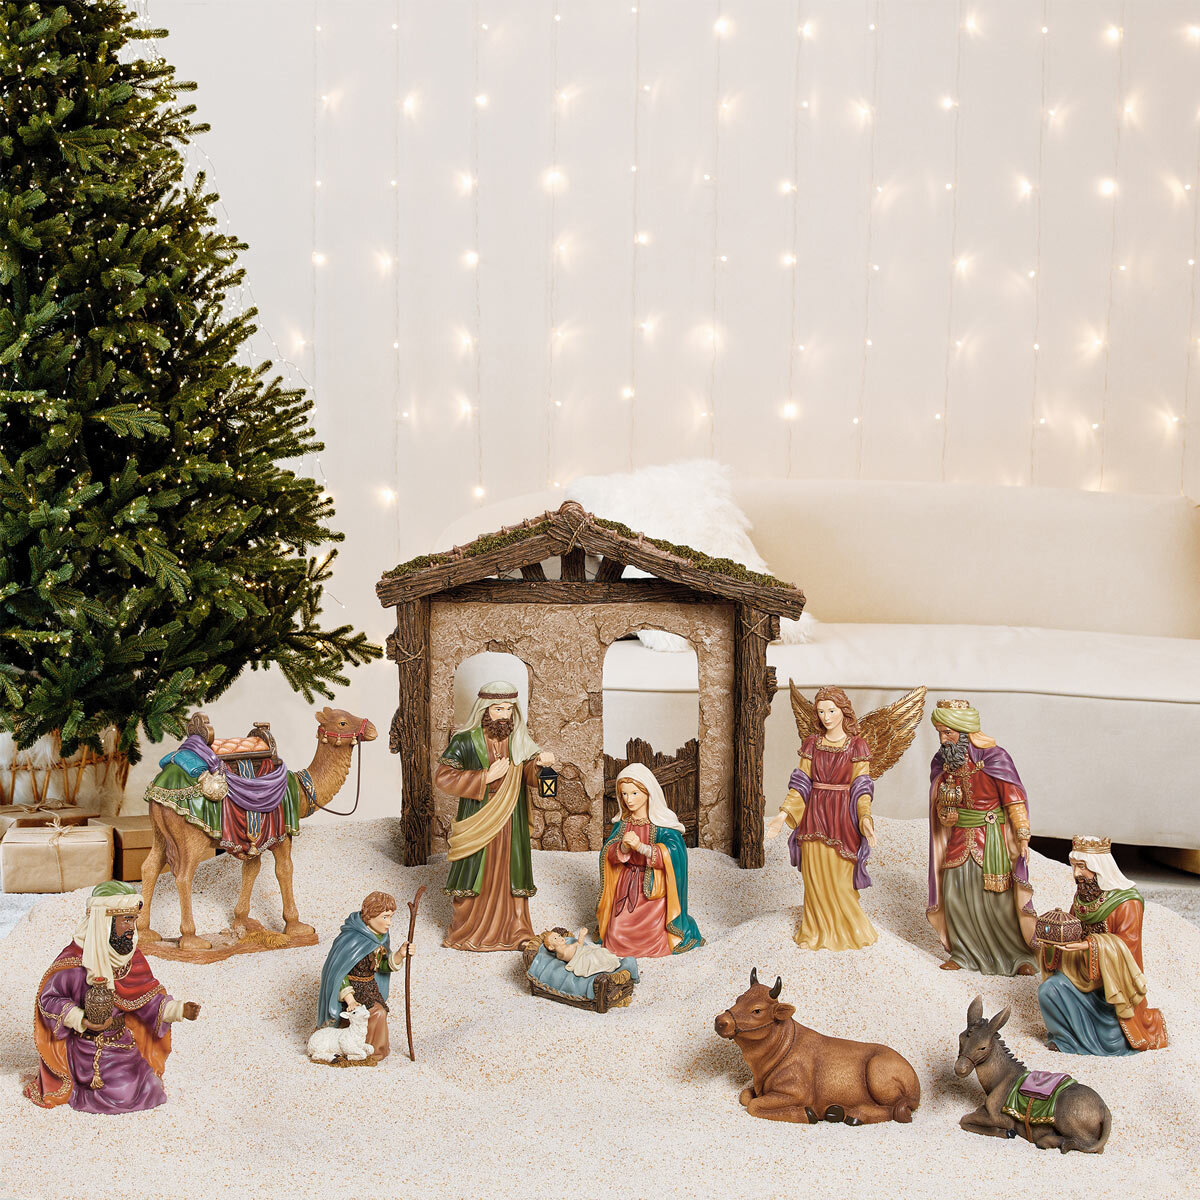 Buy KS Nativity Set Lifestyle Image at Costco.co.uk